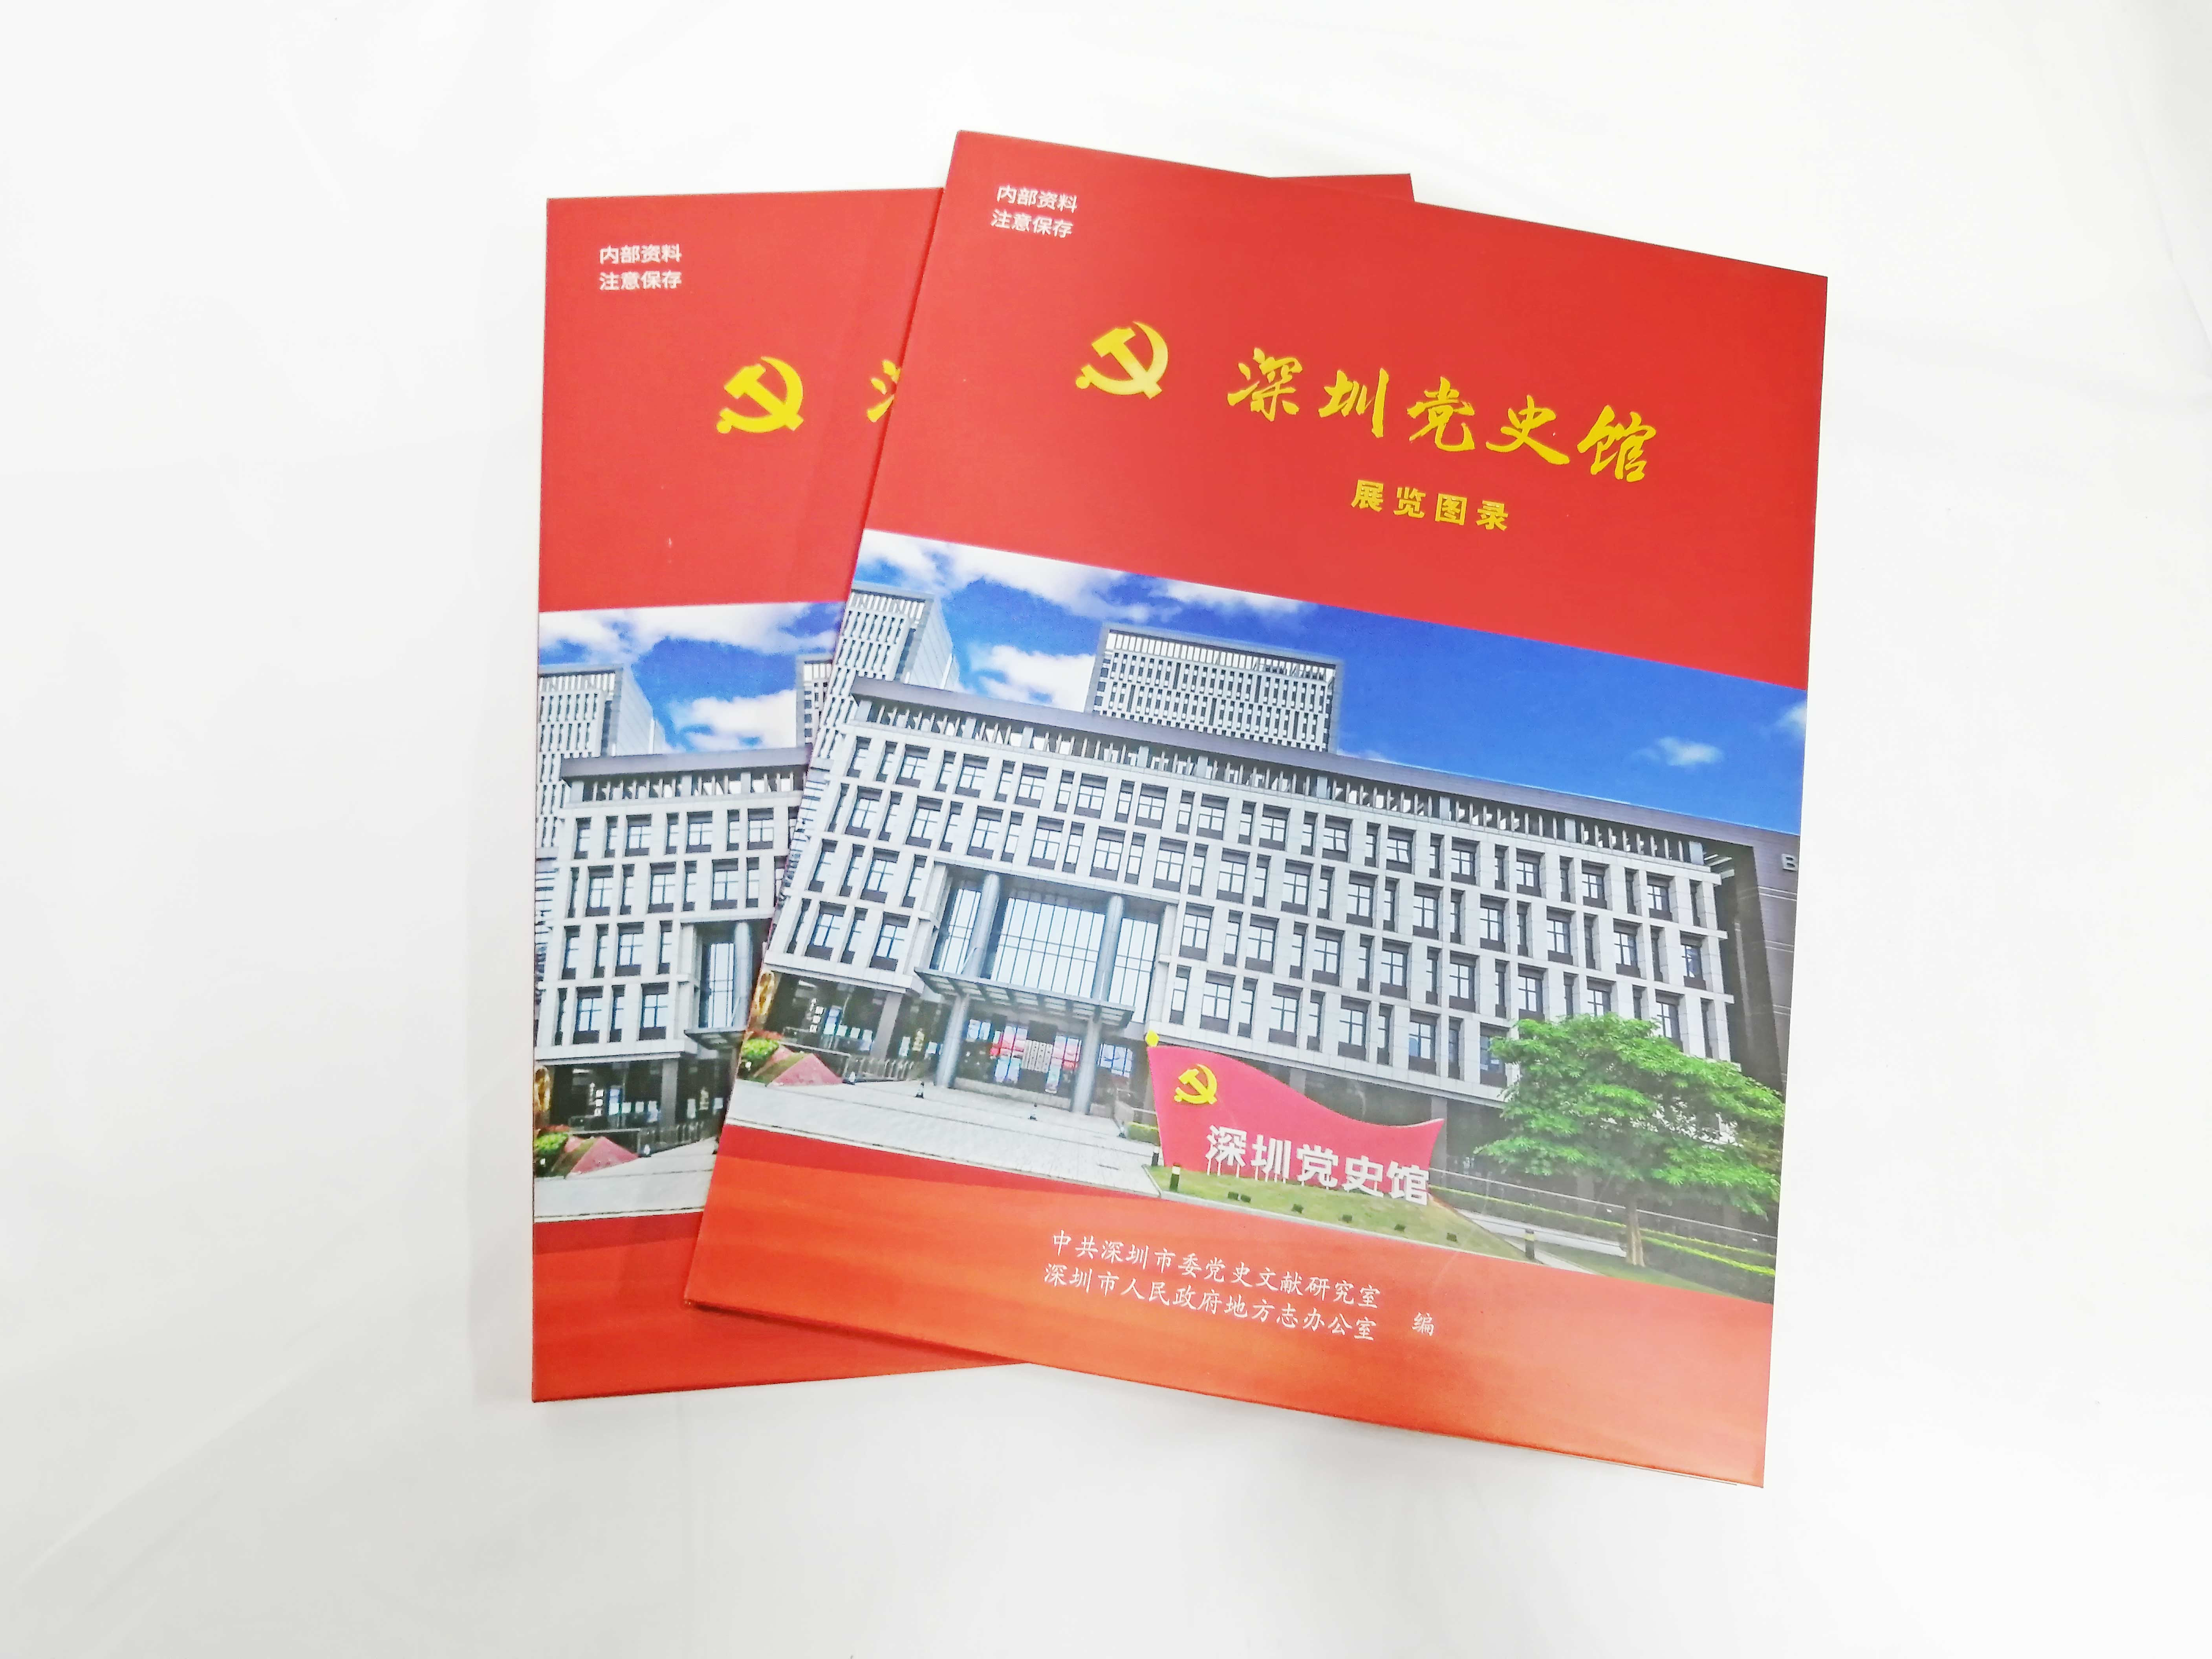 近期《深圳党史馆》展览图录由我司金丽彩印刷成功印制